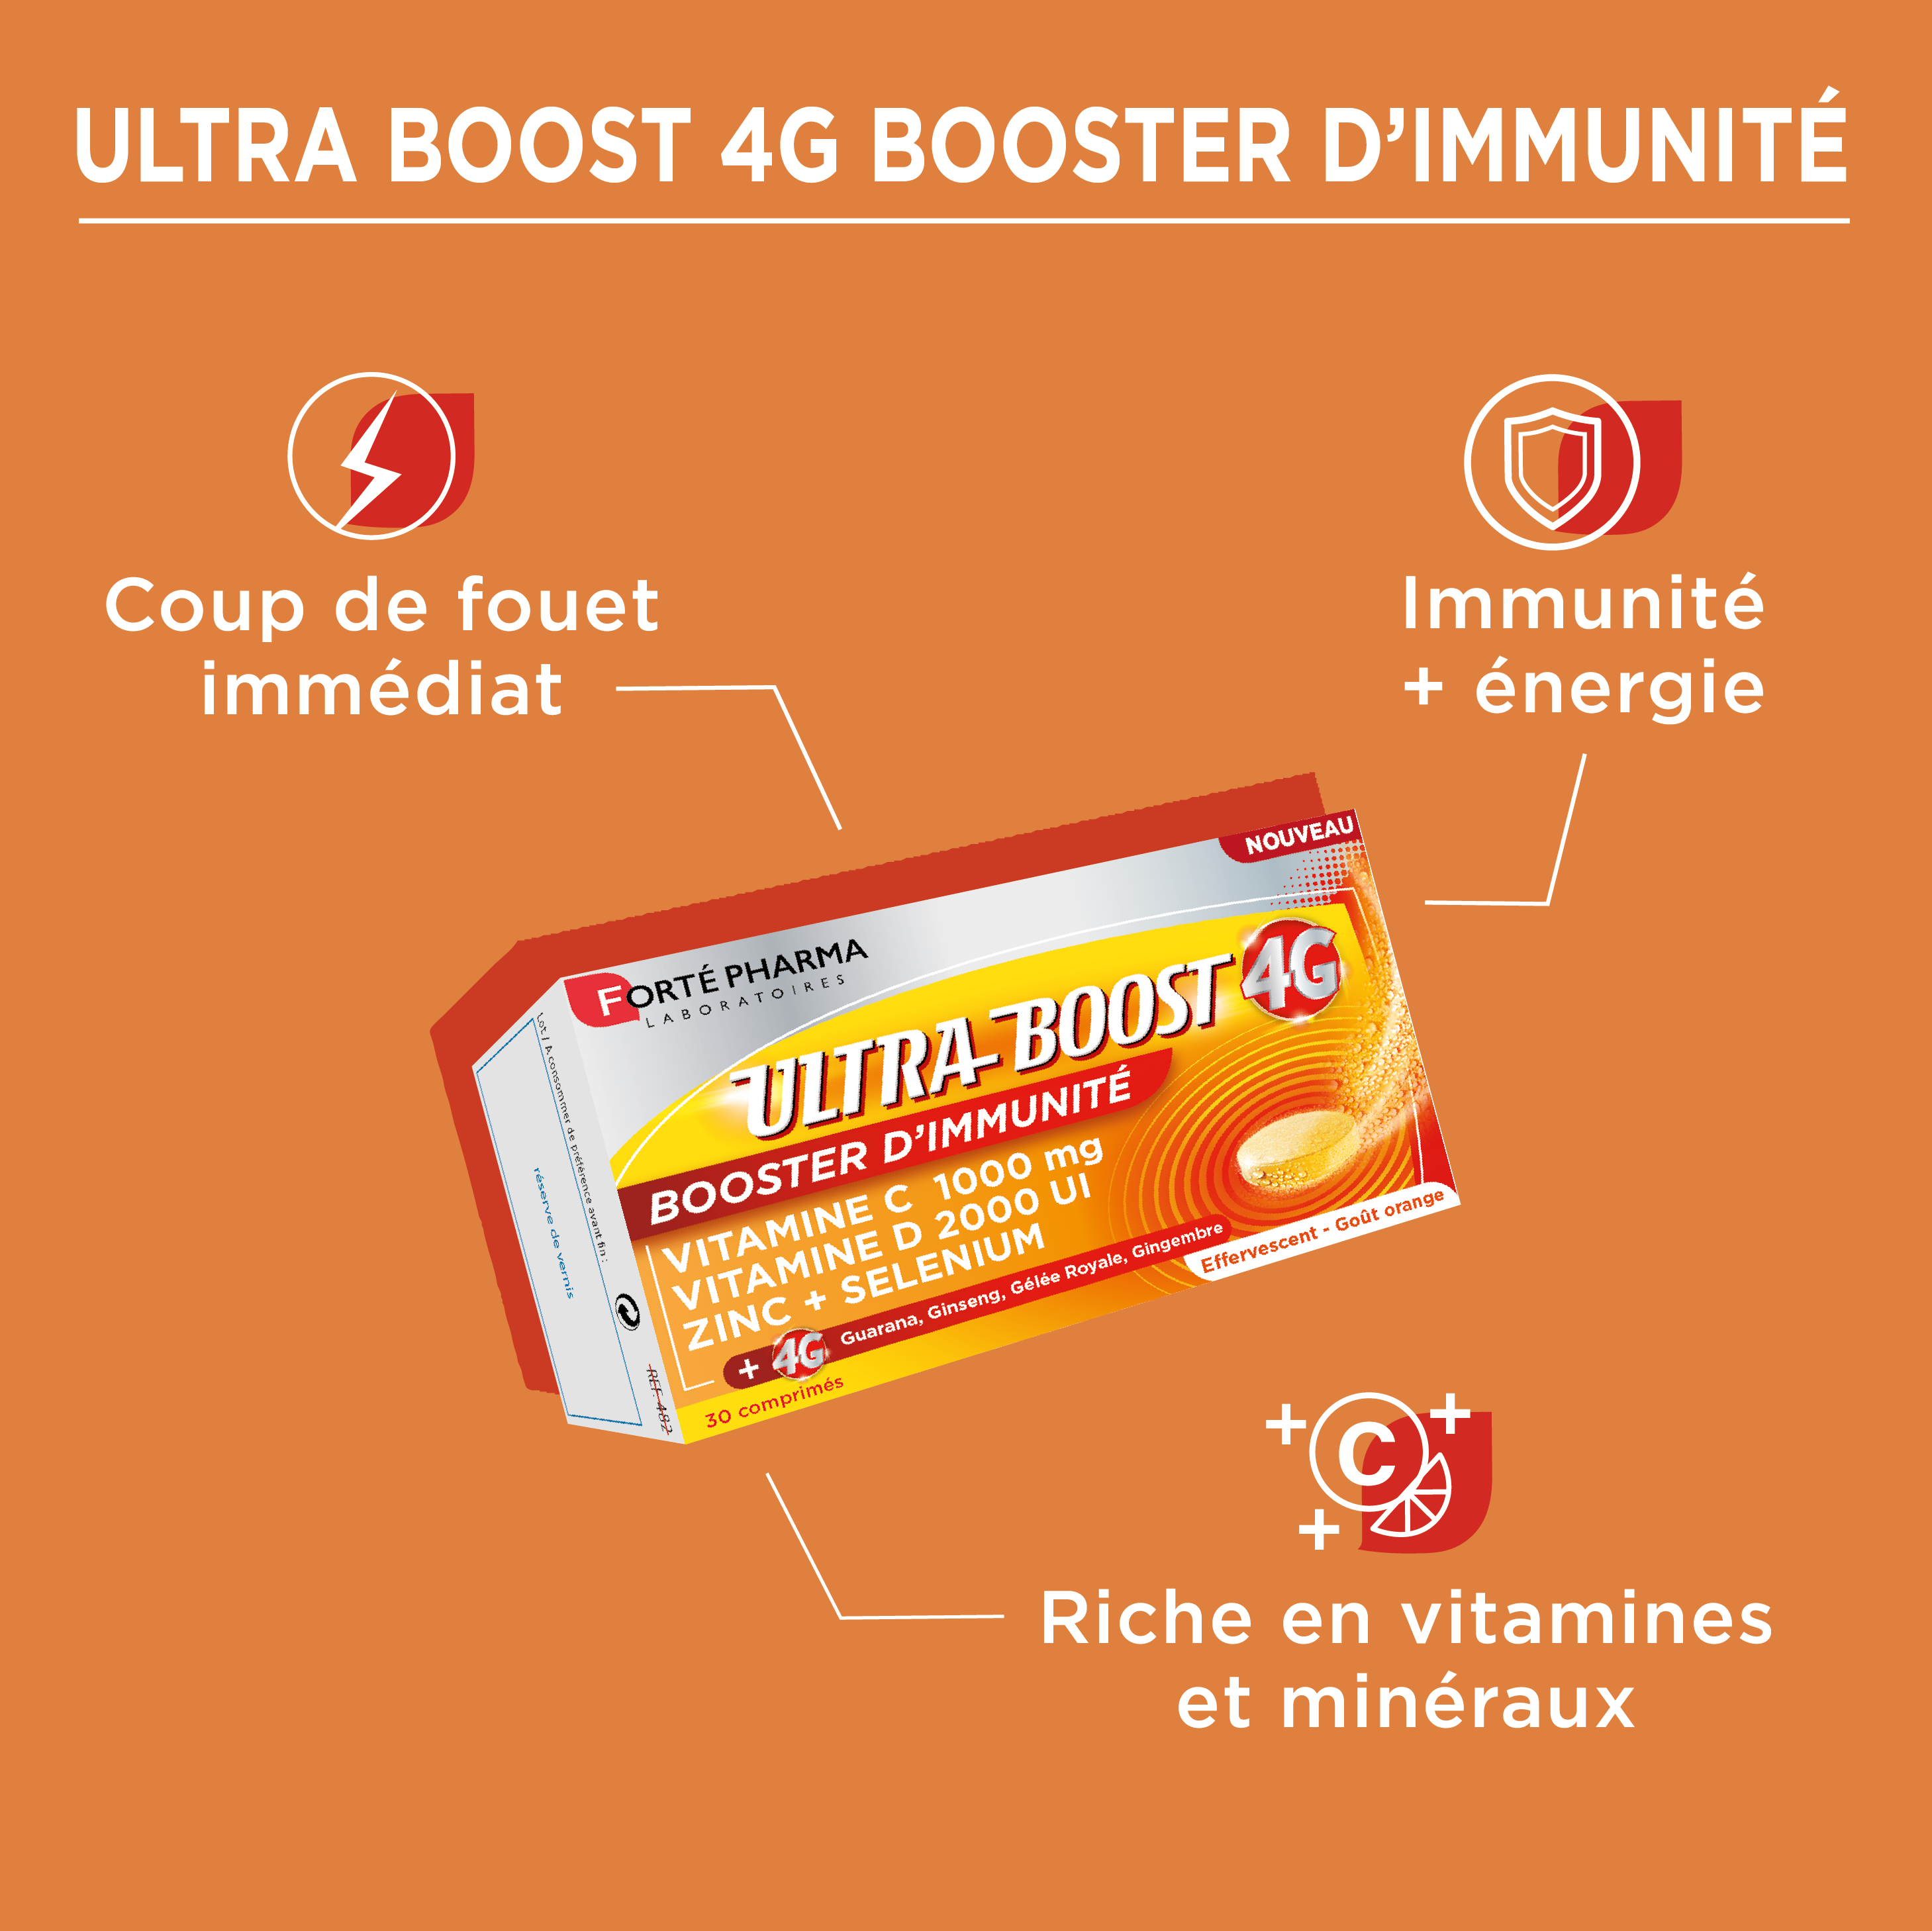 ultraboost immunité énergie bienfaits immédiat